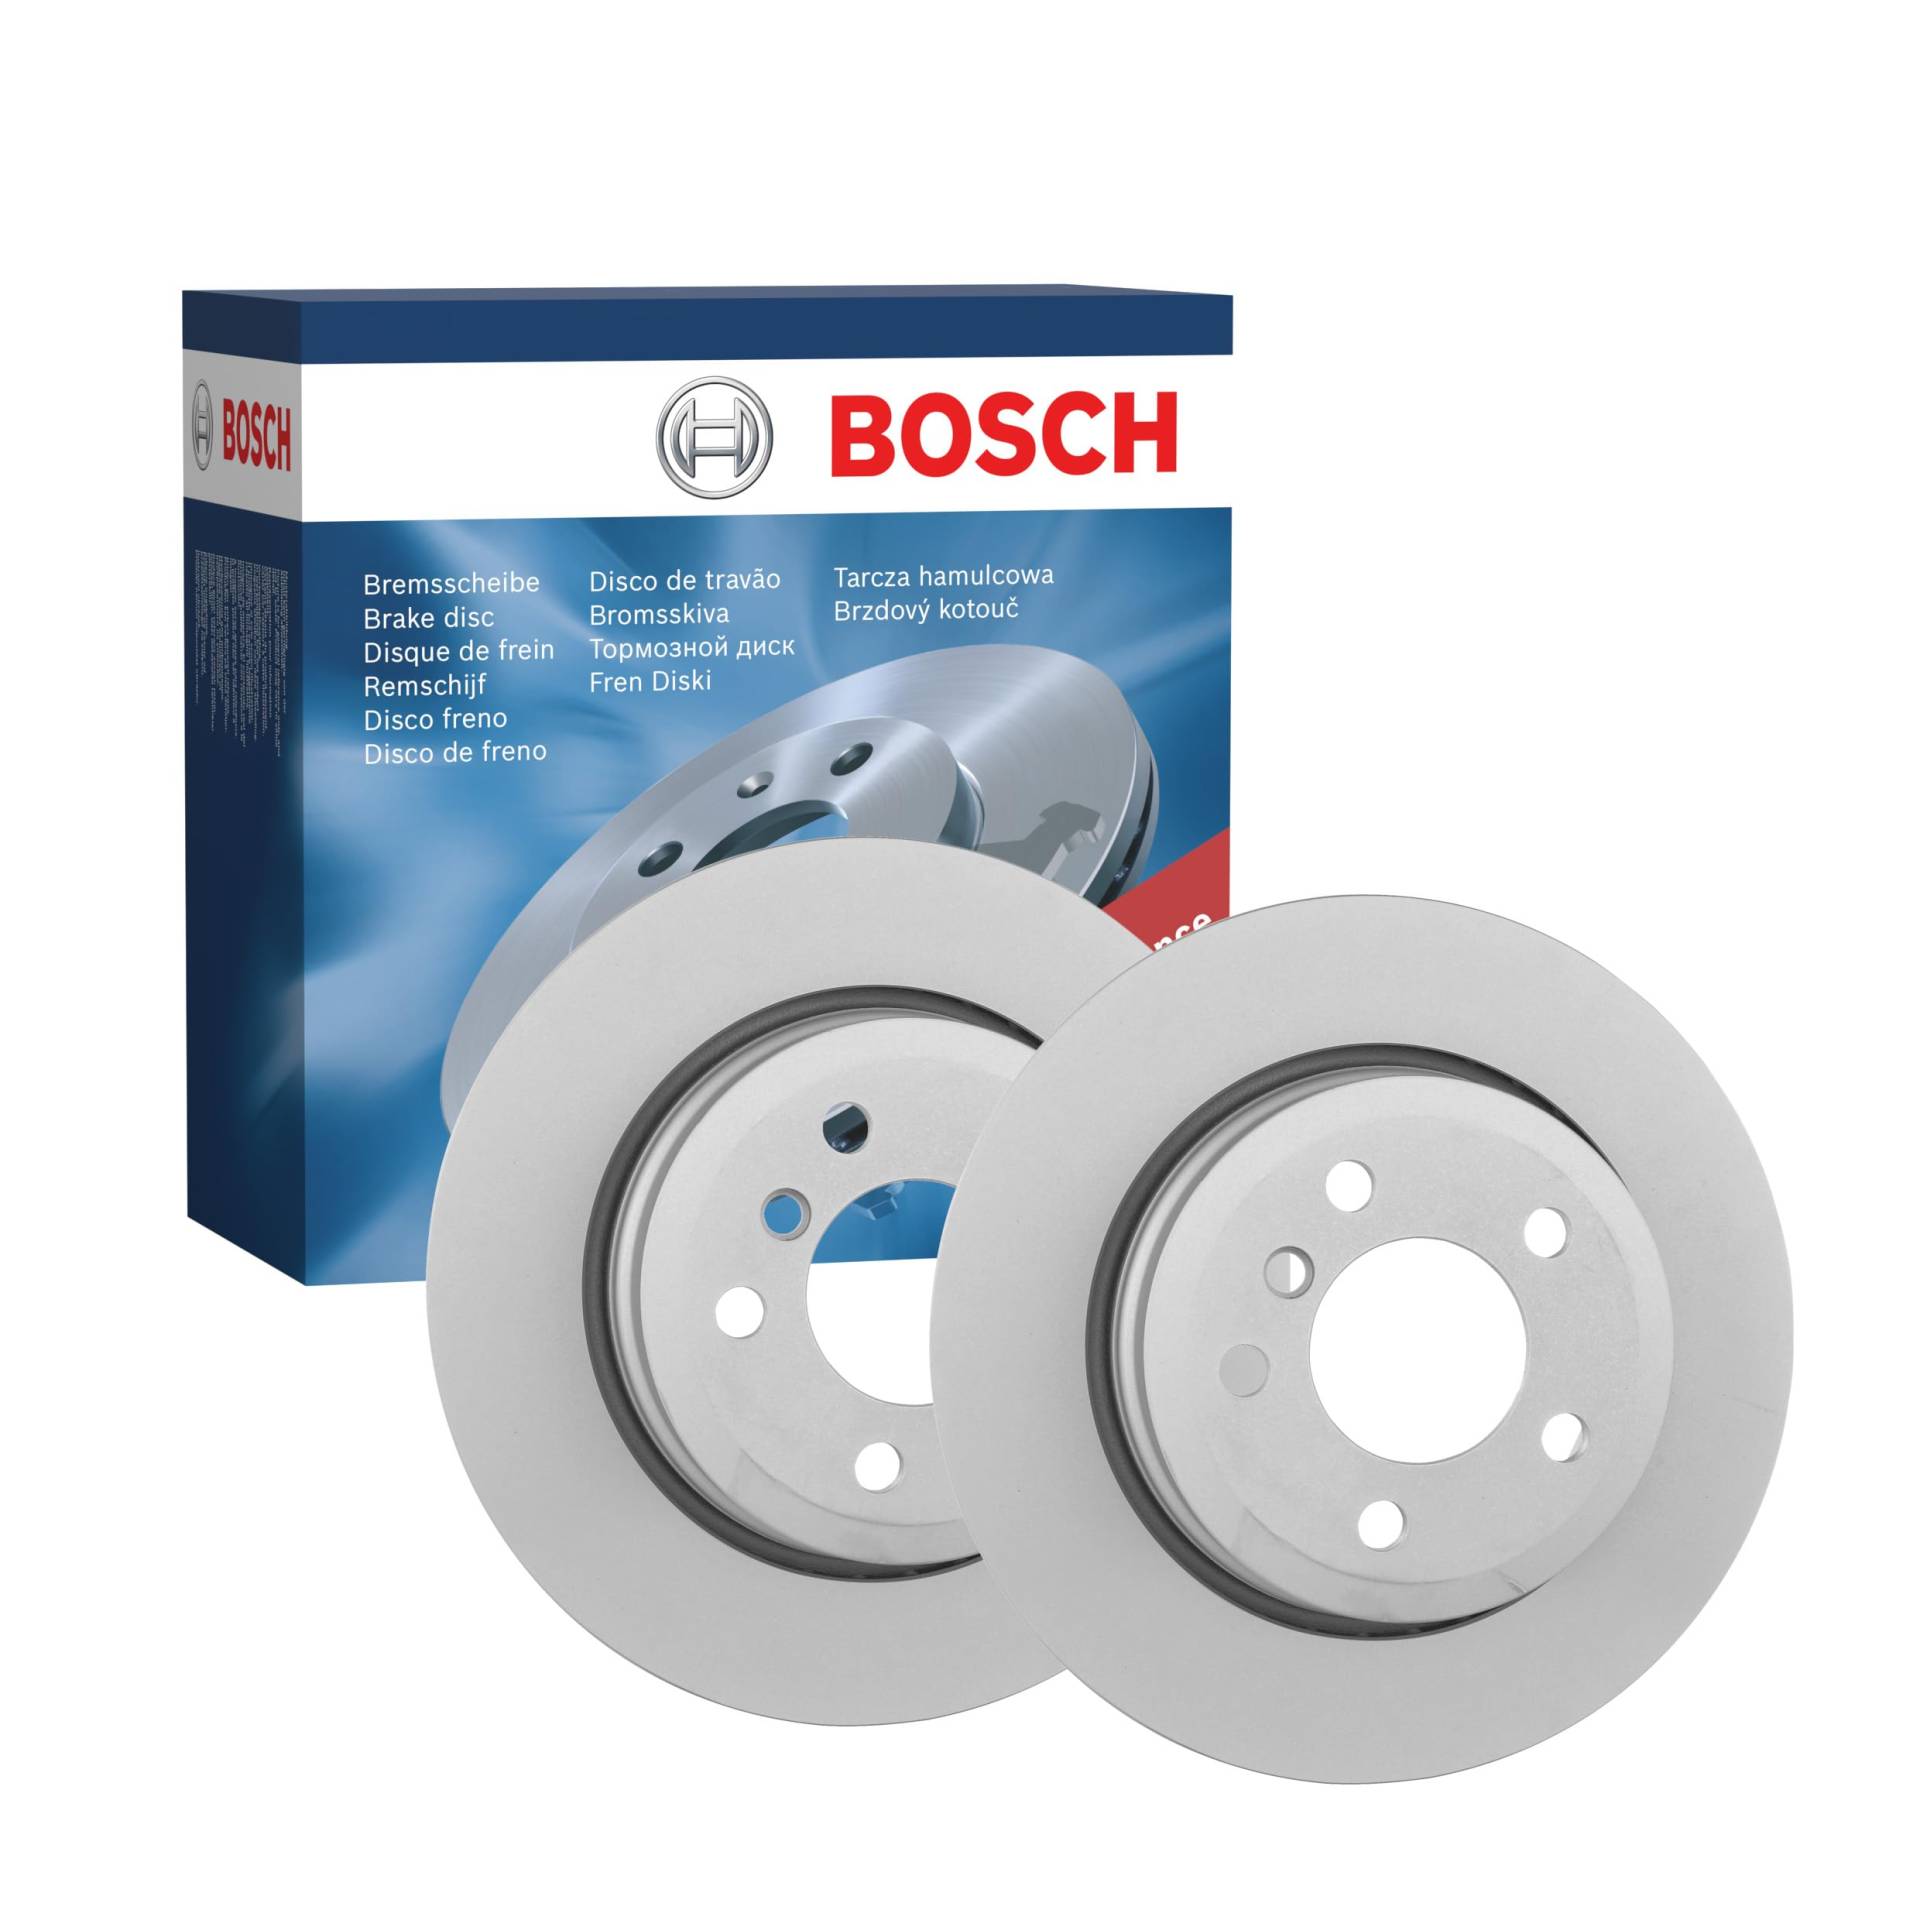 Bosch BD1045 Bremsscheiben - Hinterachse - ECE-R90 Zertifizierung - zwei Bremsscheiben pro Set von Bosch Automotive